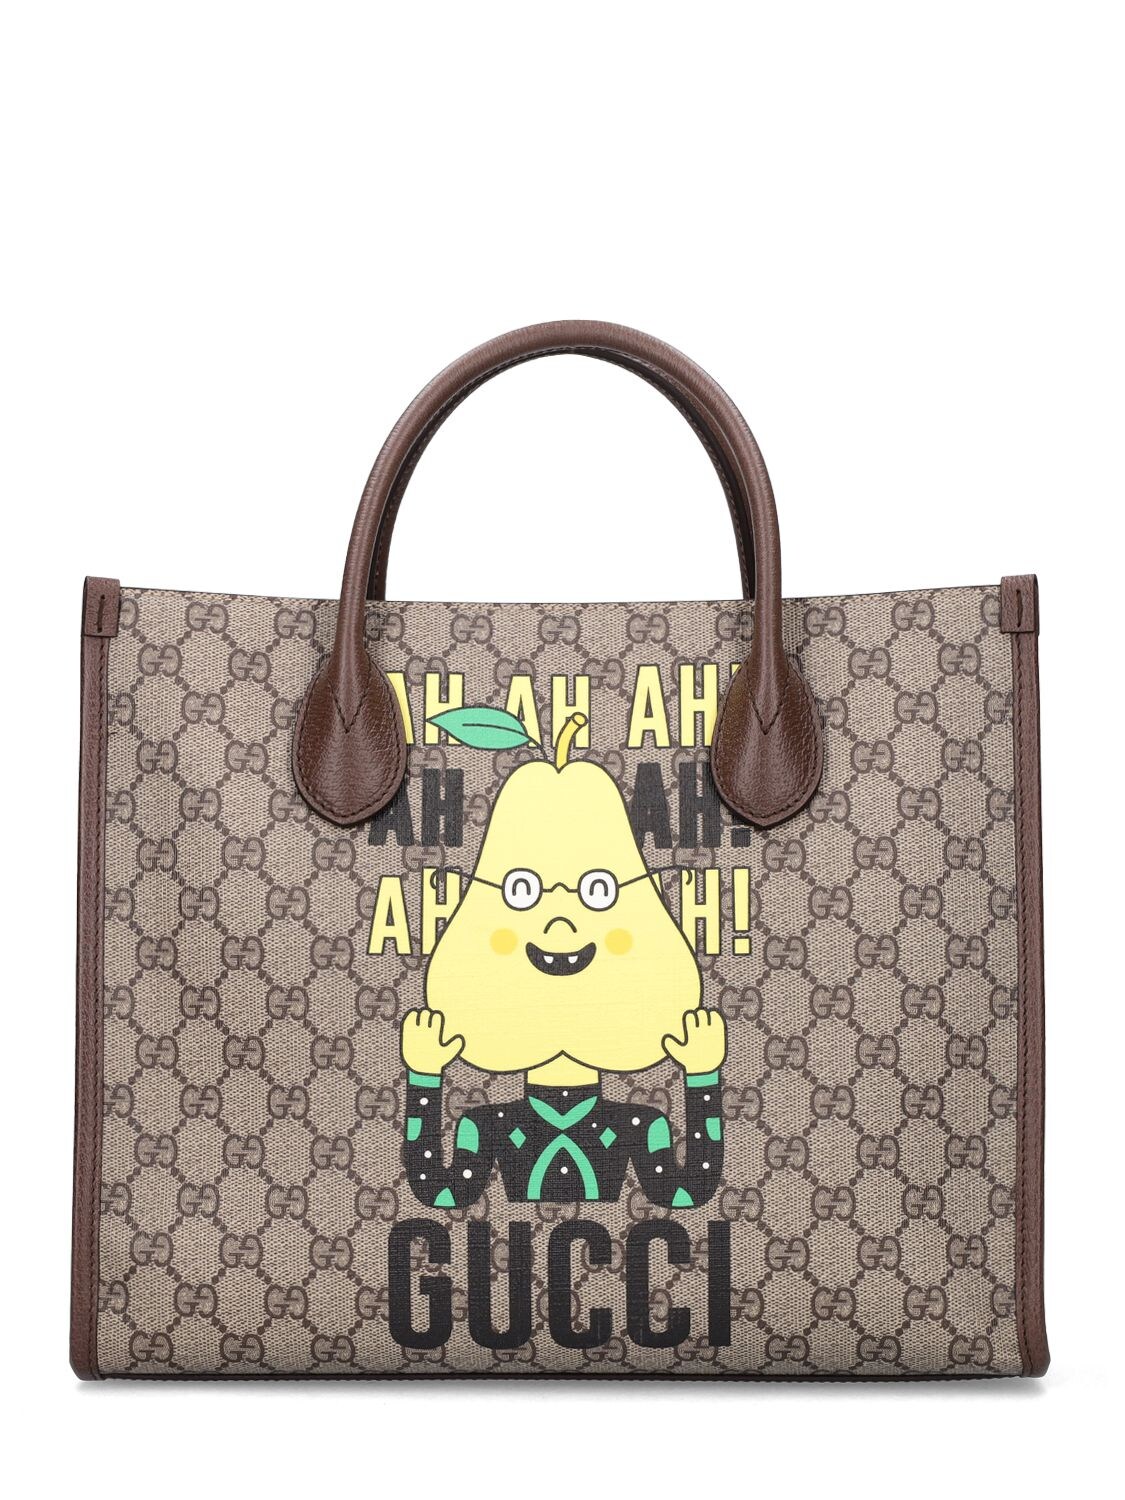 Gucci Pear Print Small Tote Bag - GUCCI - Modalova